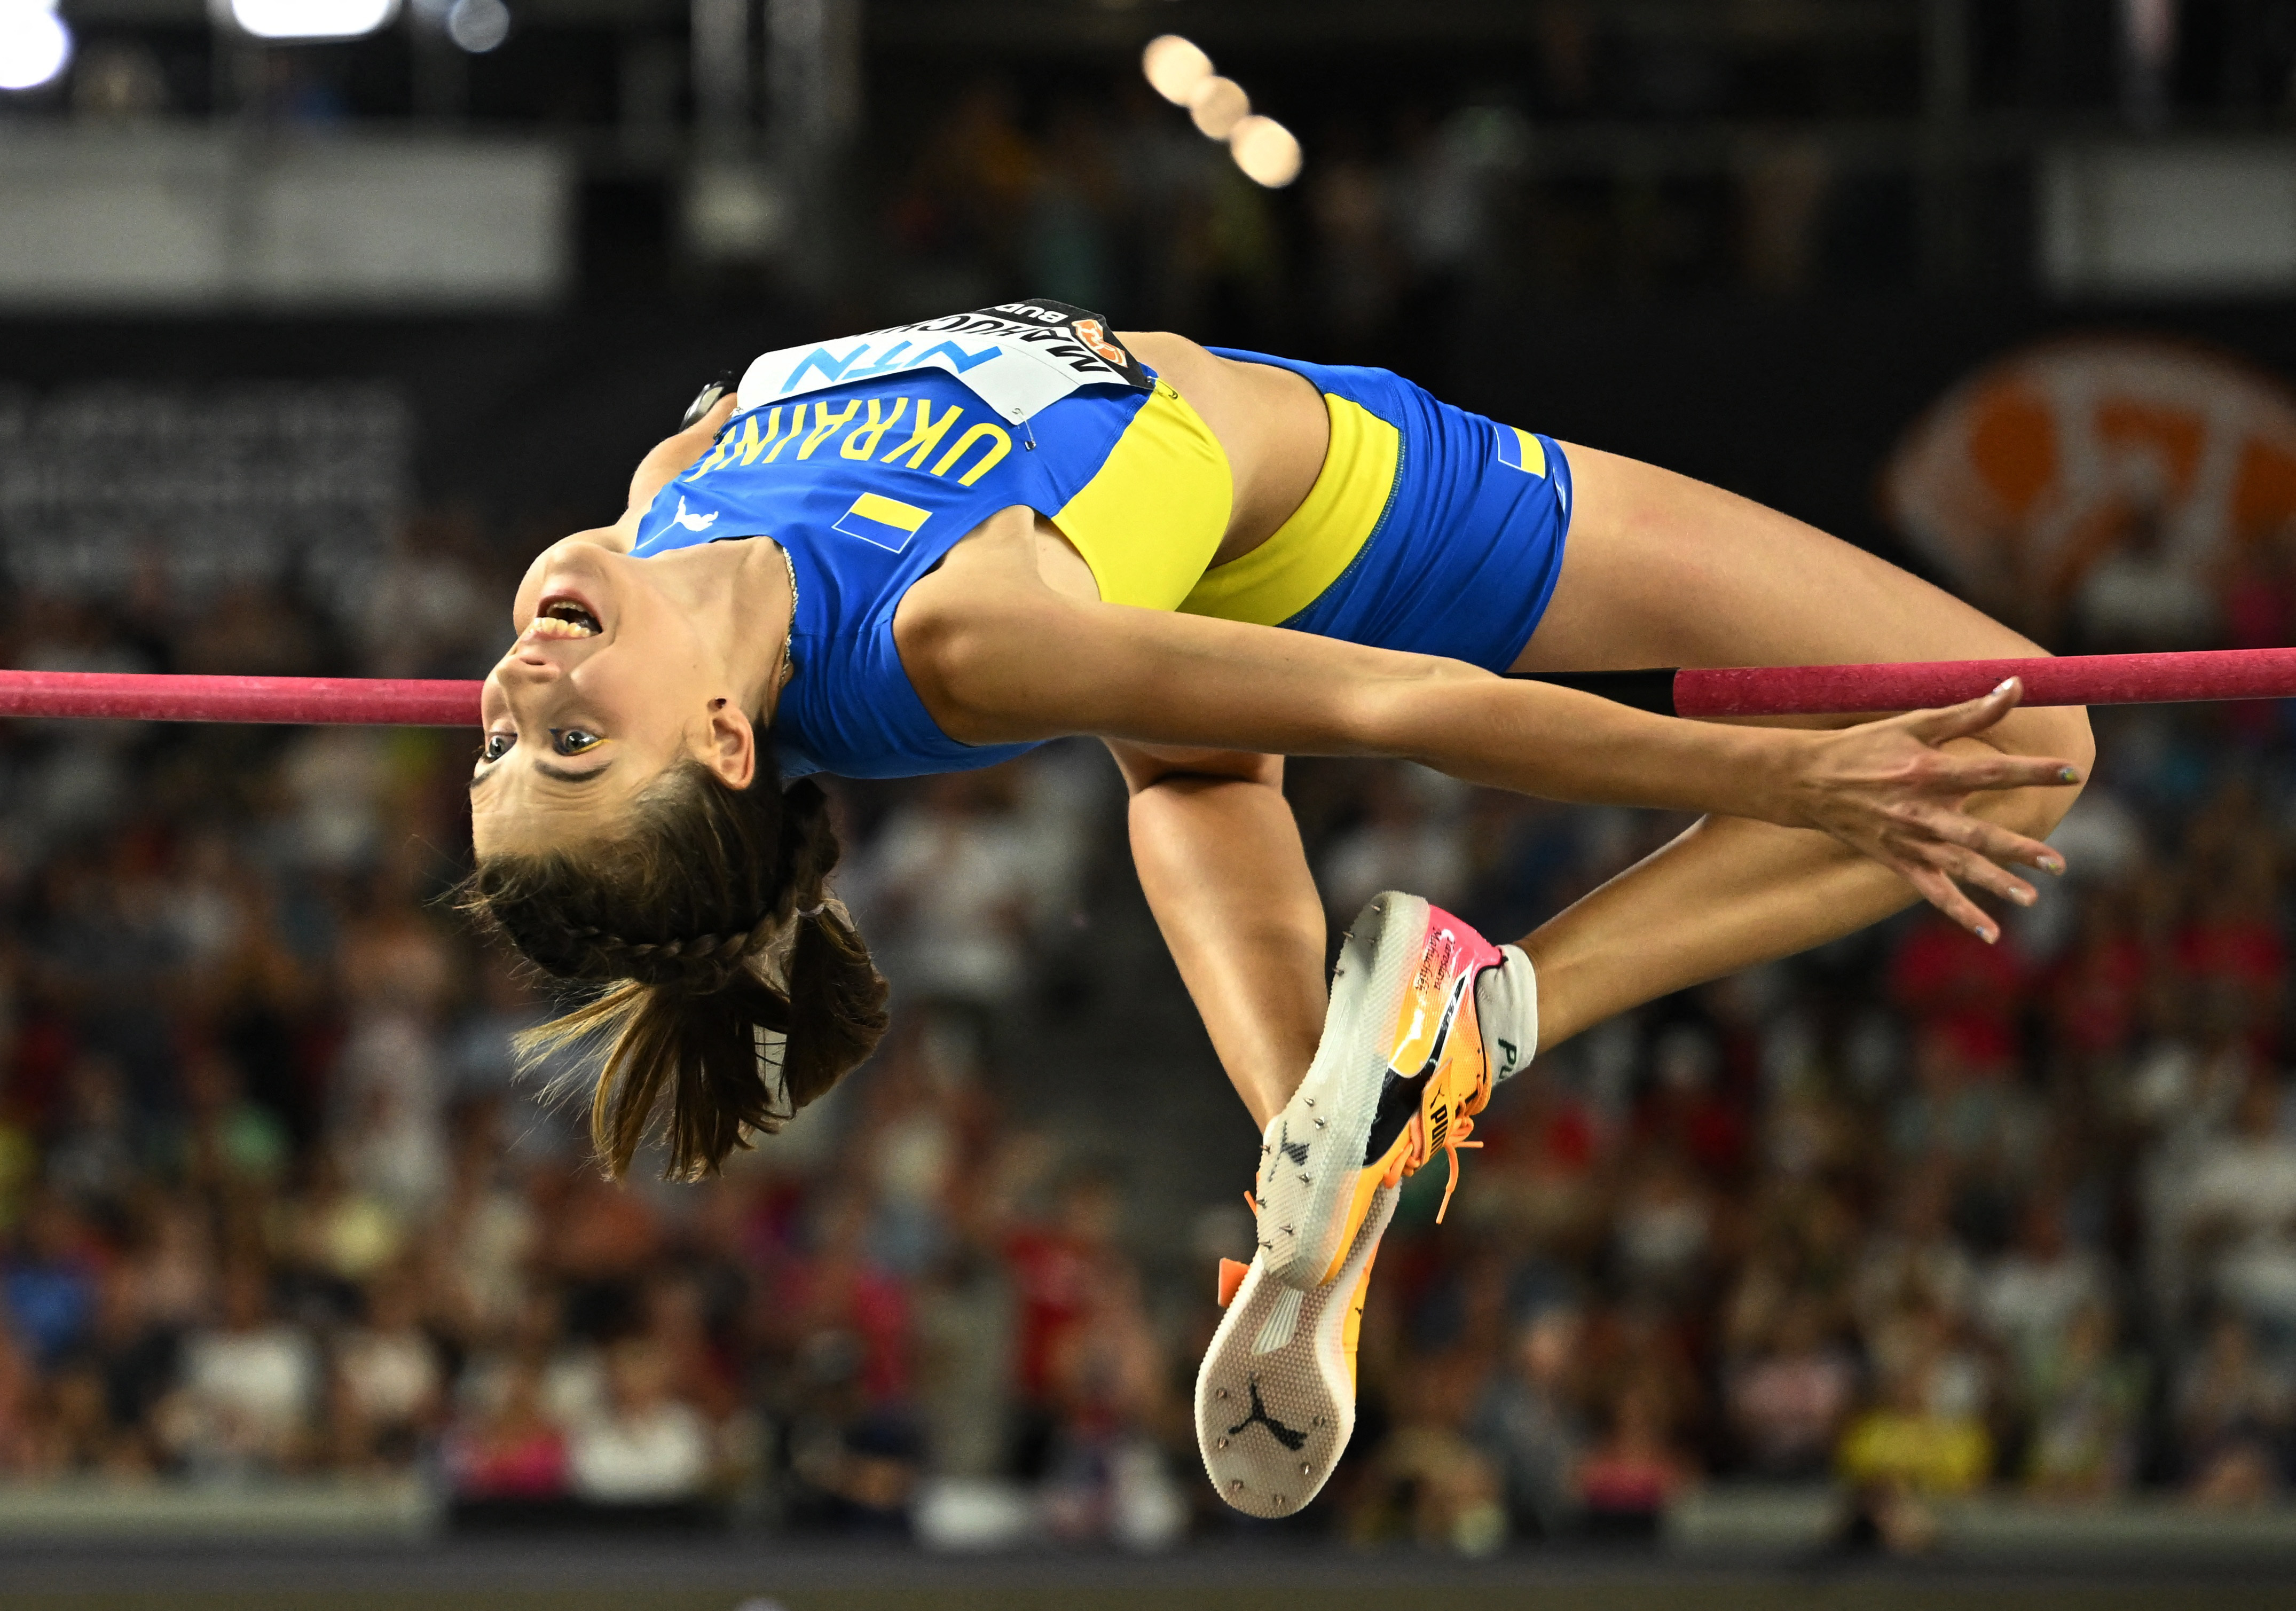 Ukraine's Mahuchikh soars to world championship victory in women's